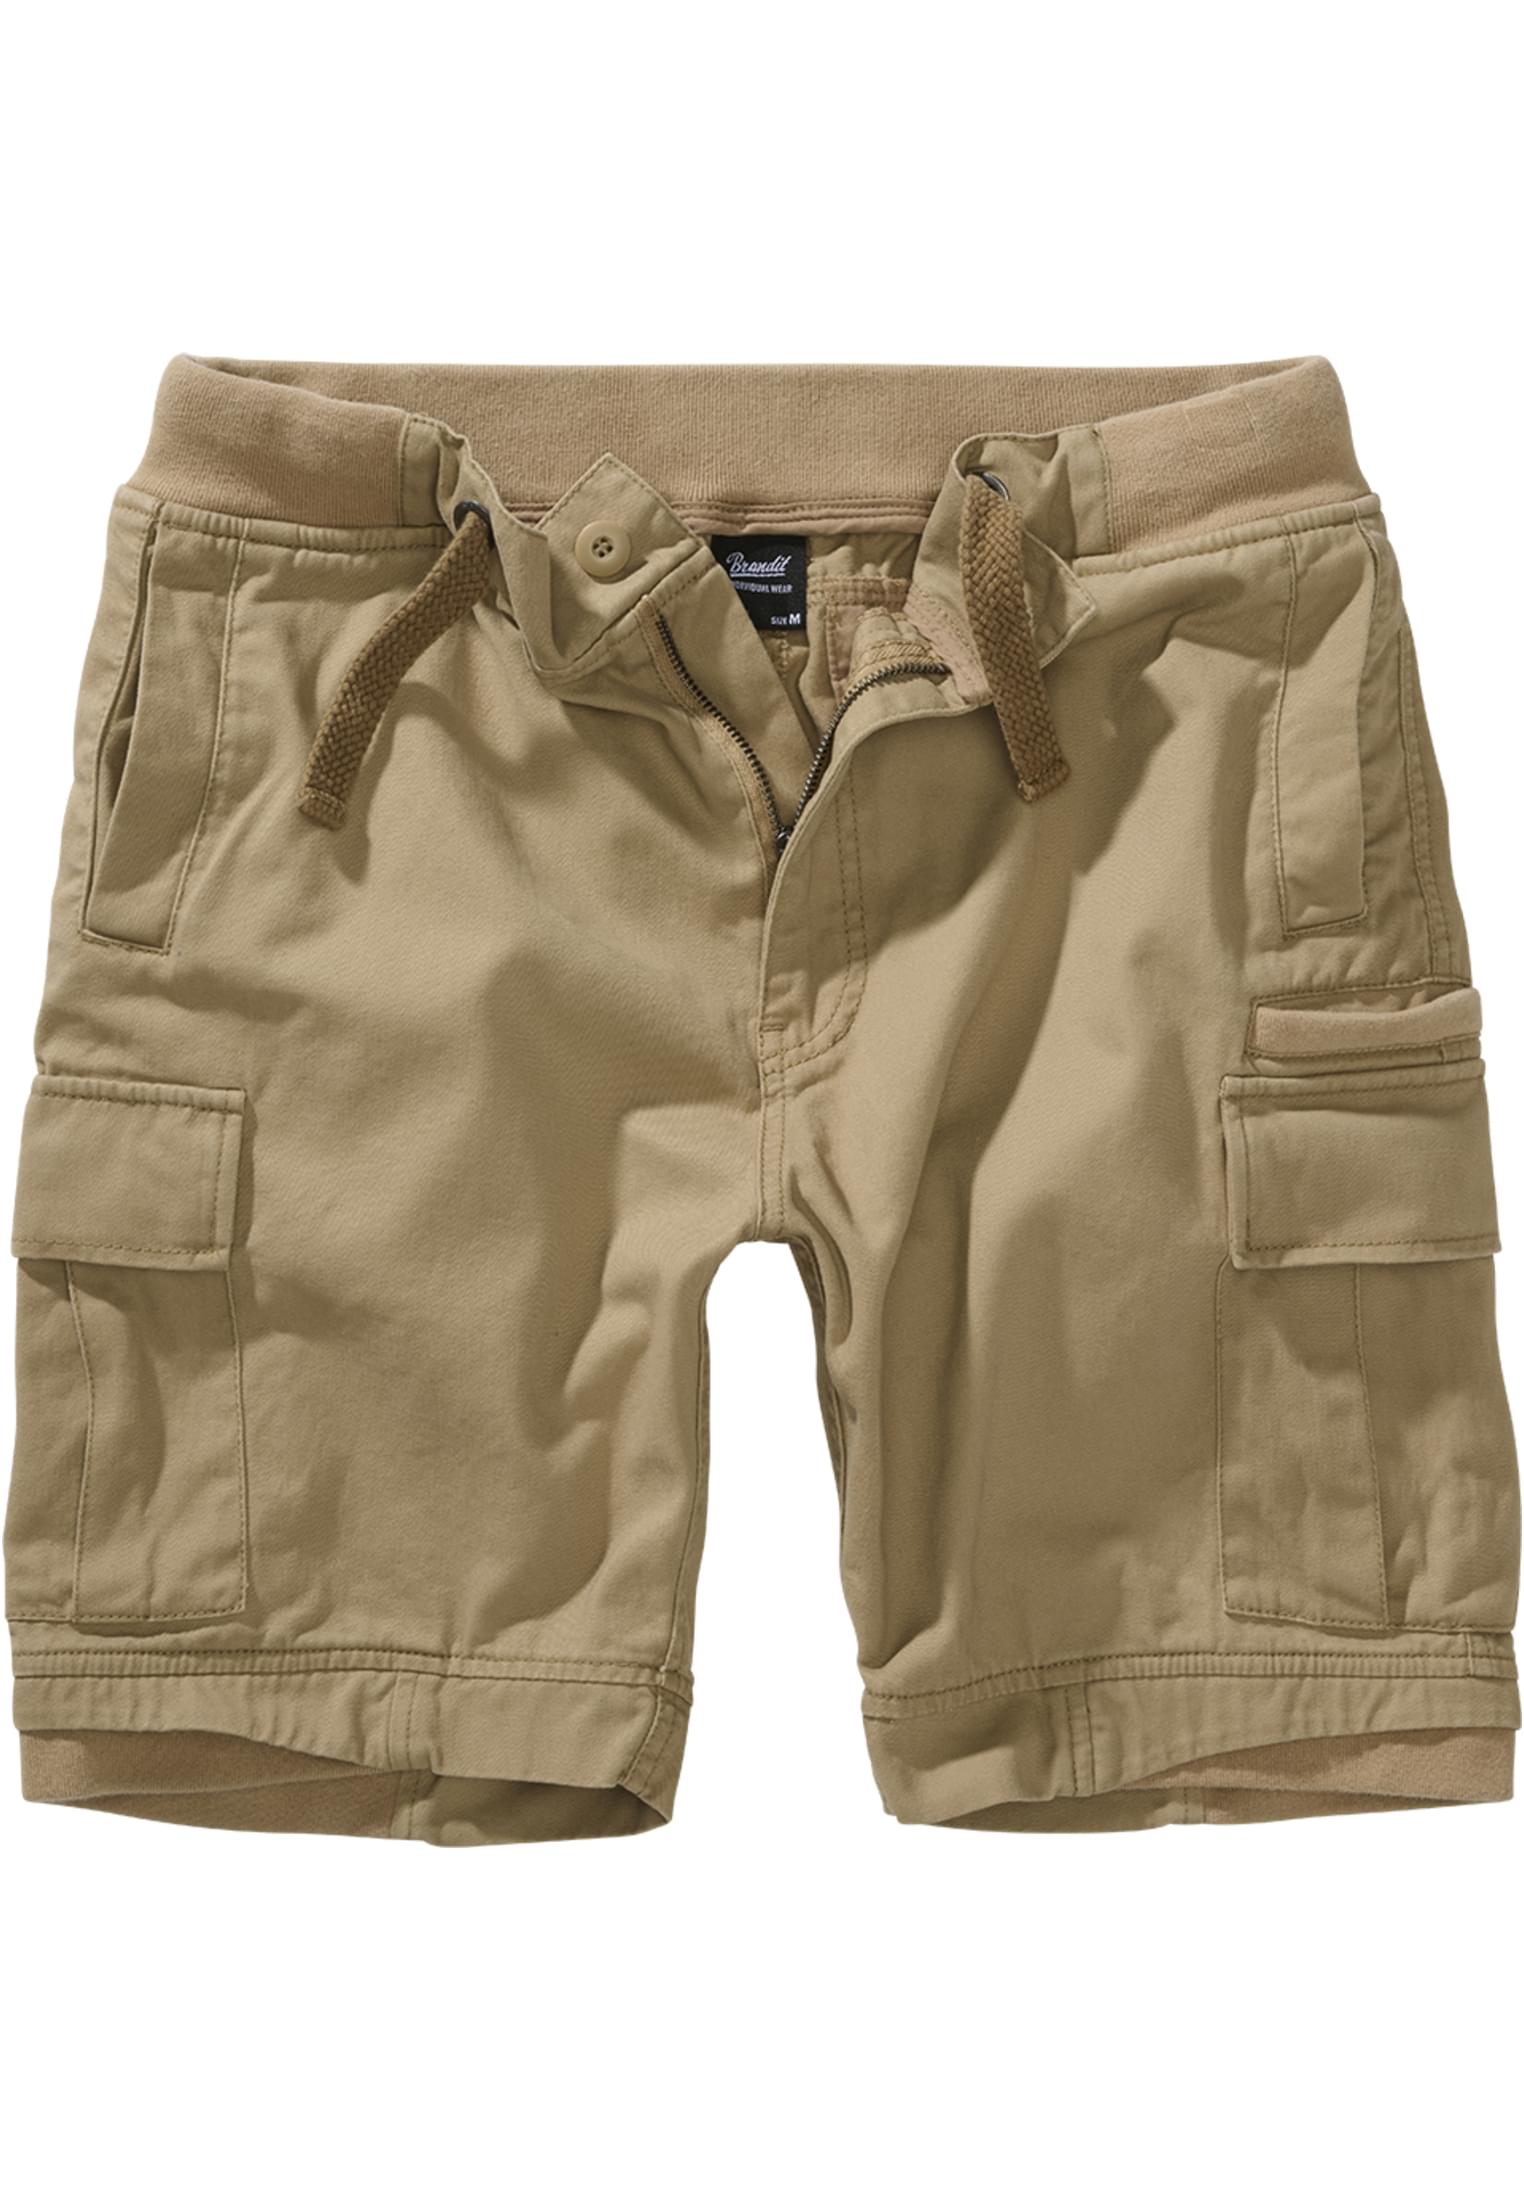 Camel Shorts Packham Vintage Shorts